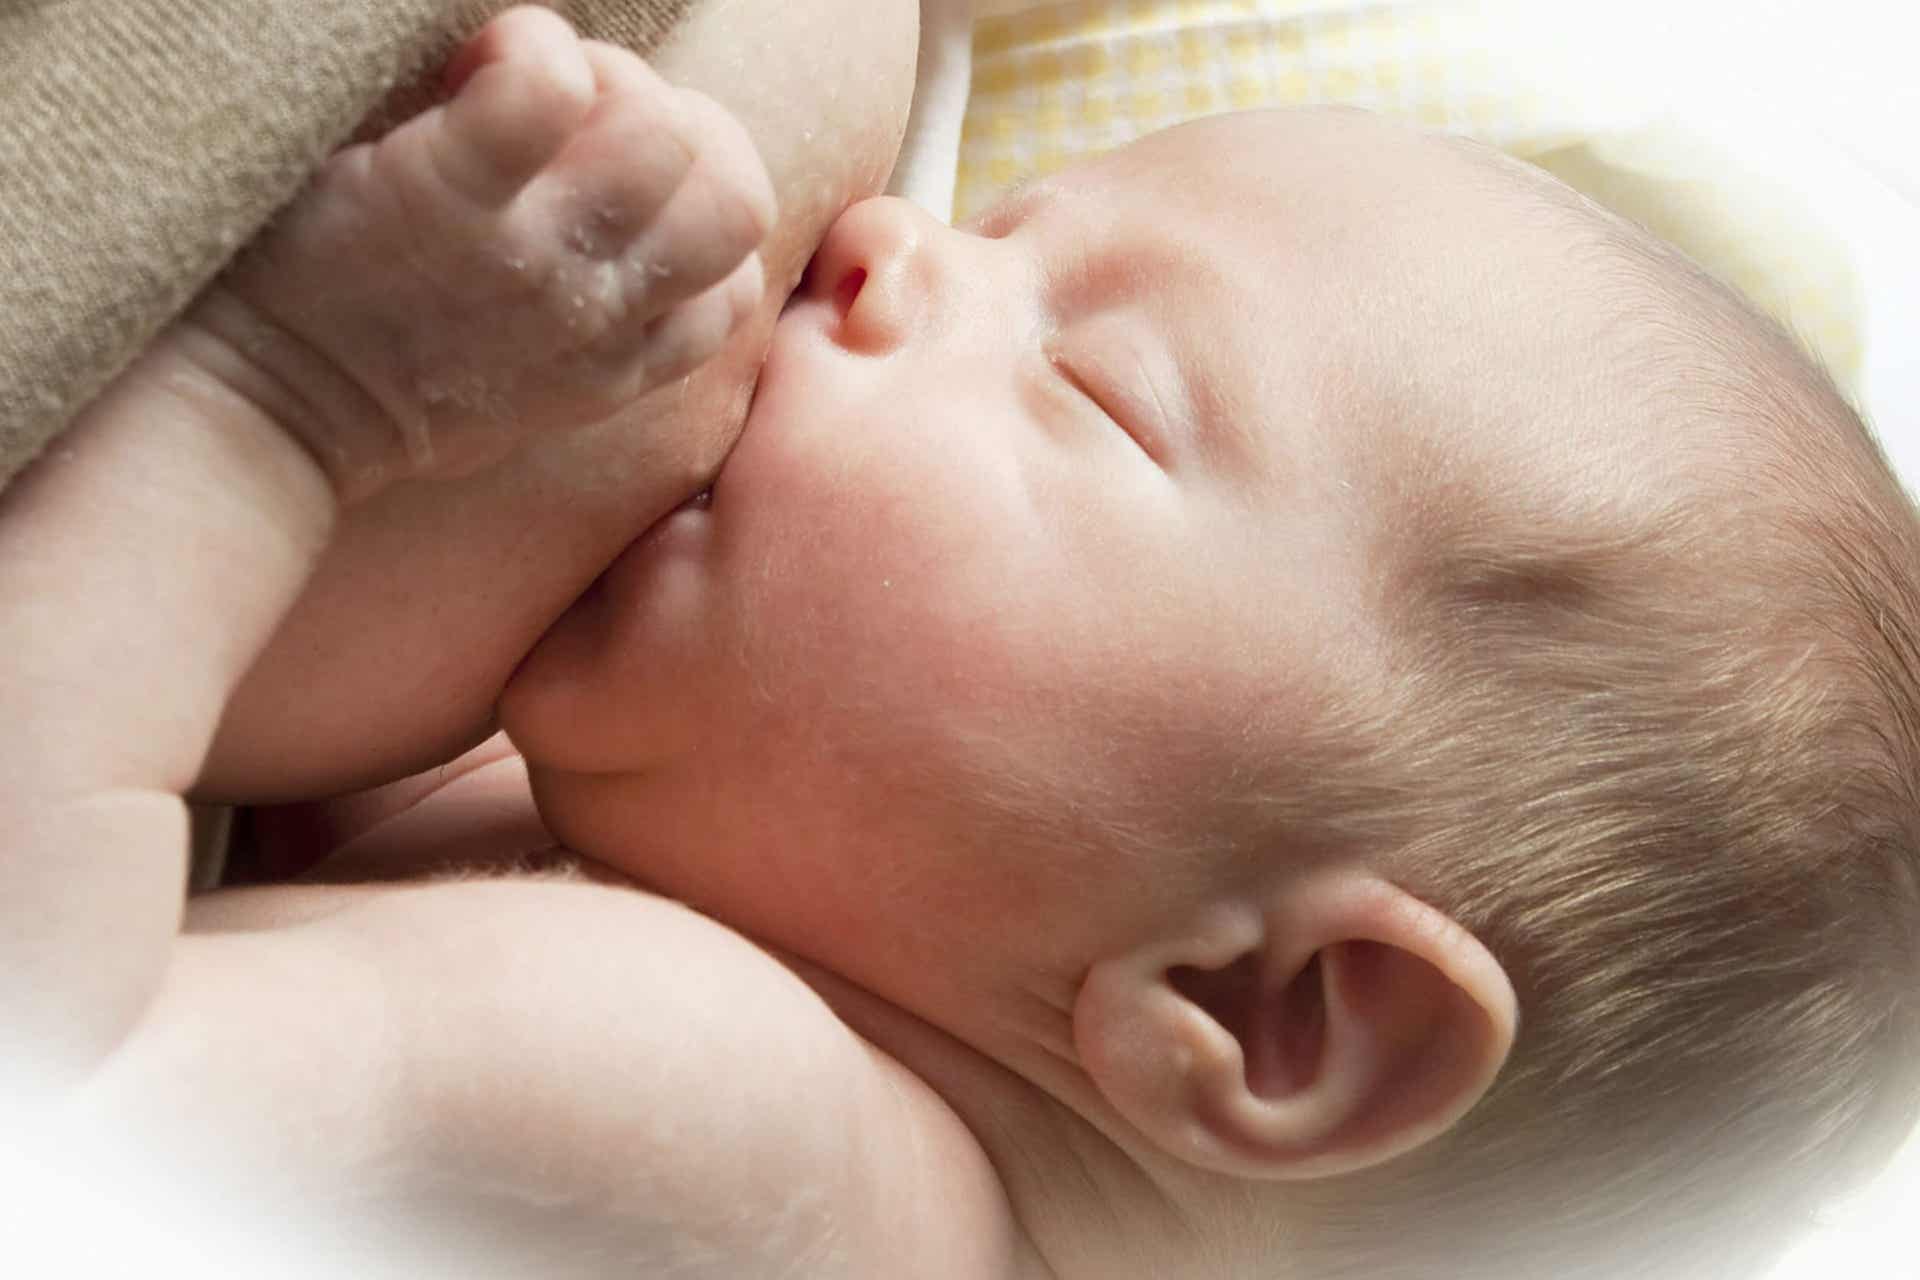 A baby breastfeeding.